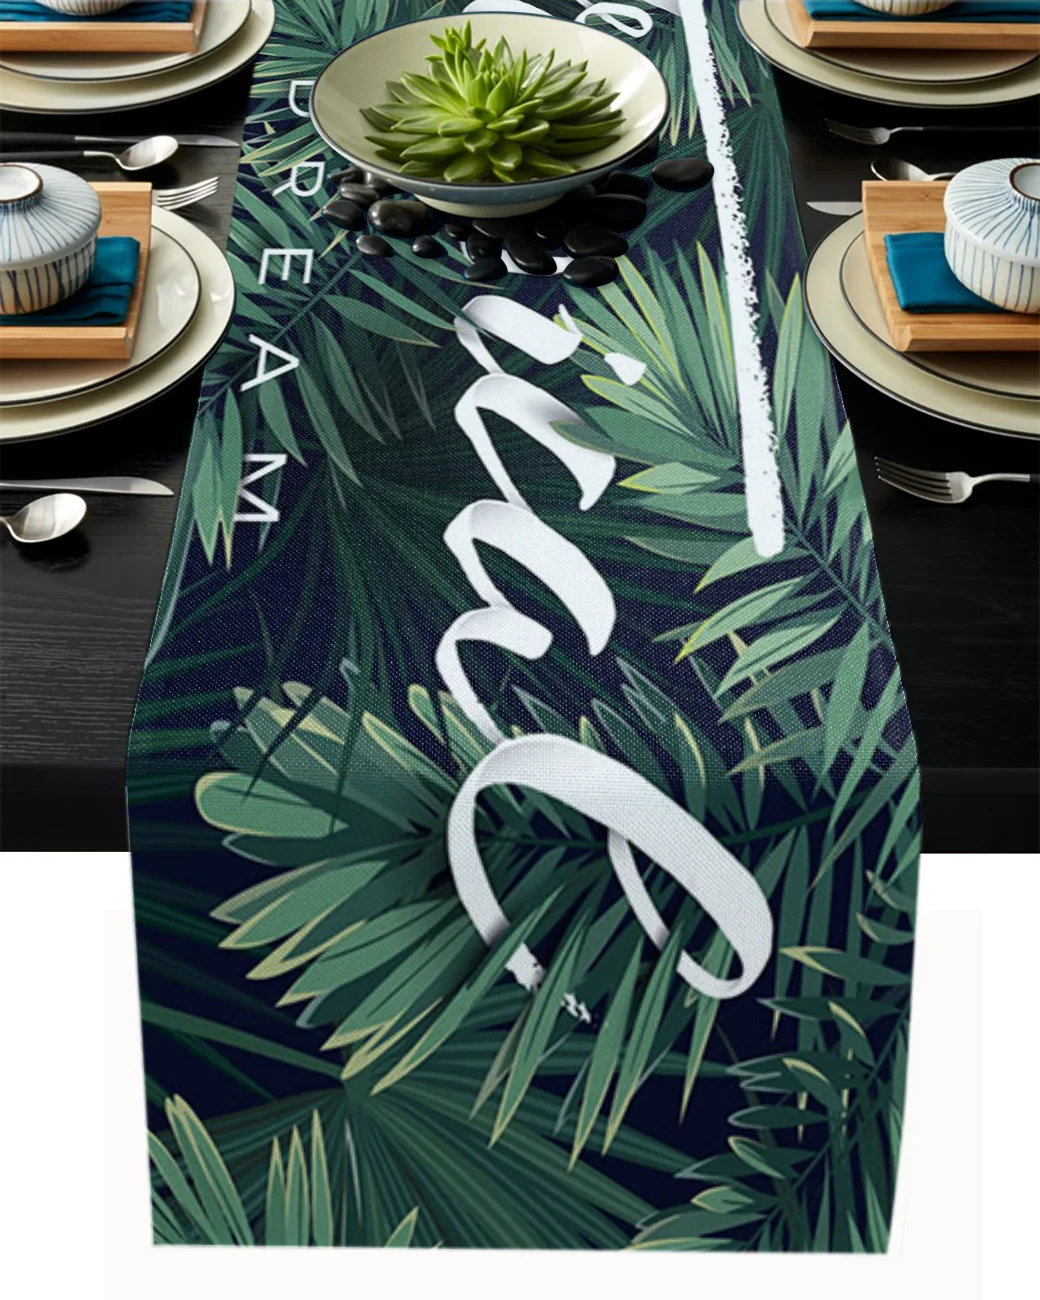 

Тёмно-зелёные скатерти с рисунком пальмовых листьев для обеденного стола, кухни, гостиной, ресторана, кафе